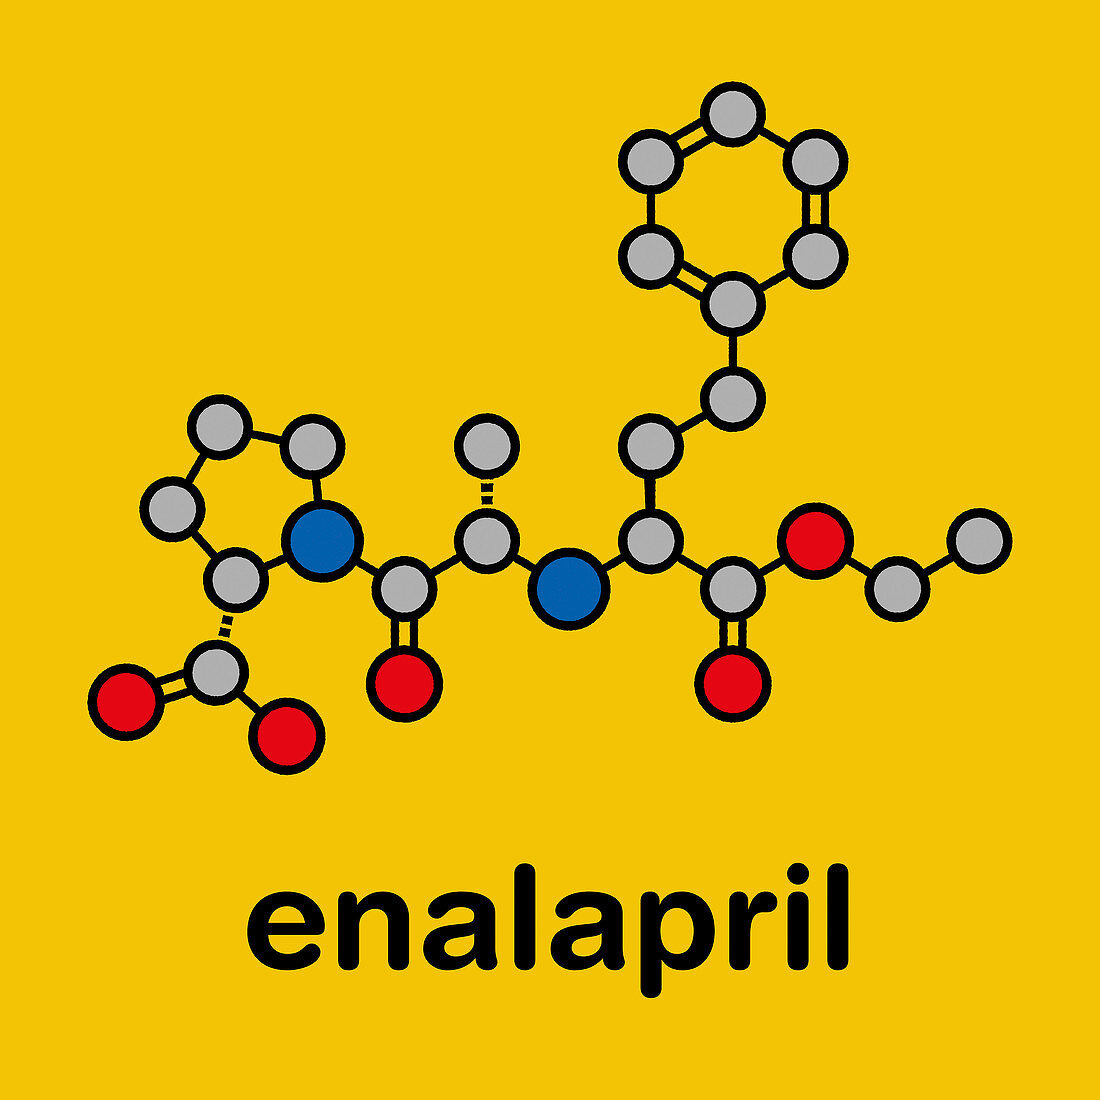 Enalapril high blood pressure drug molecule